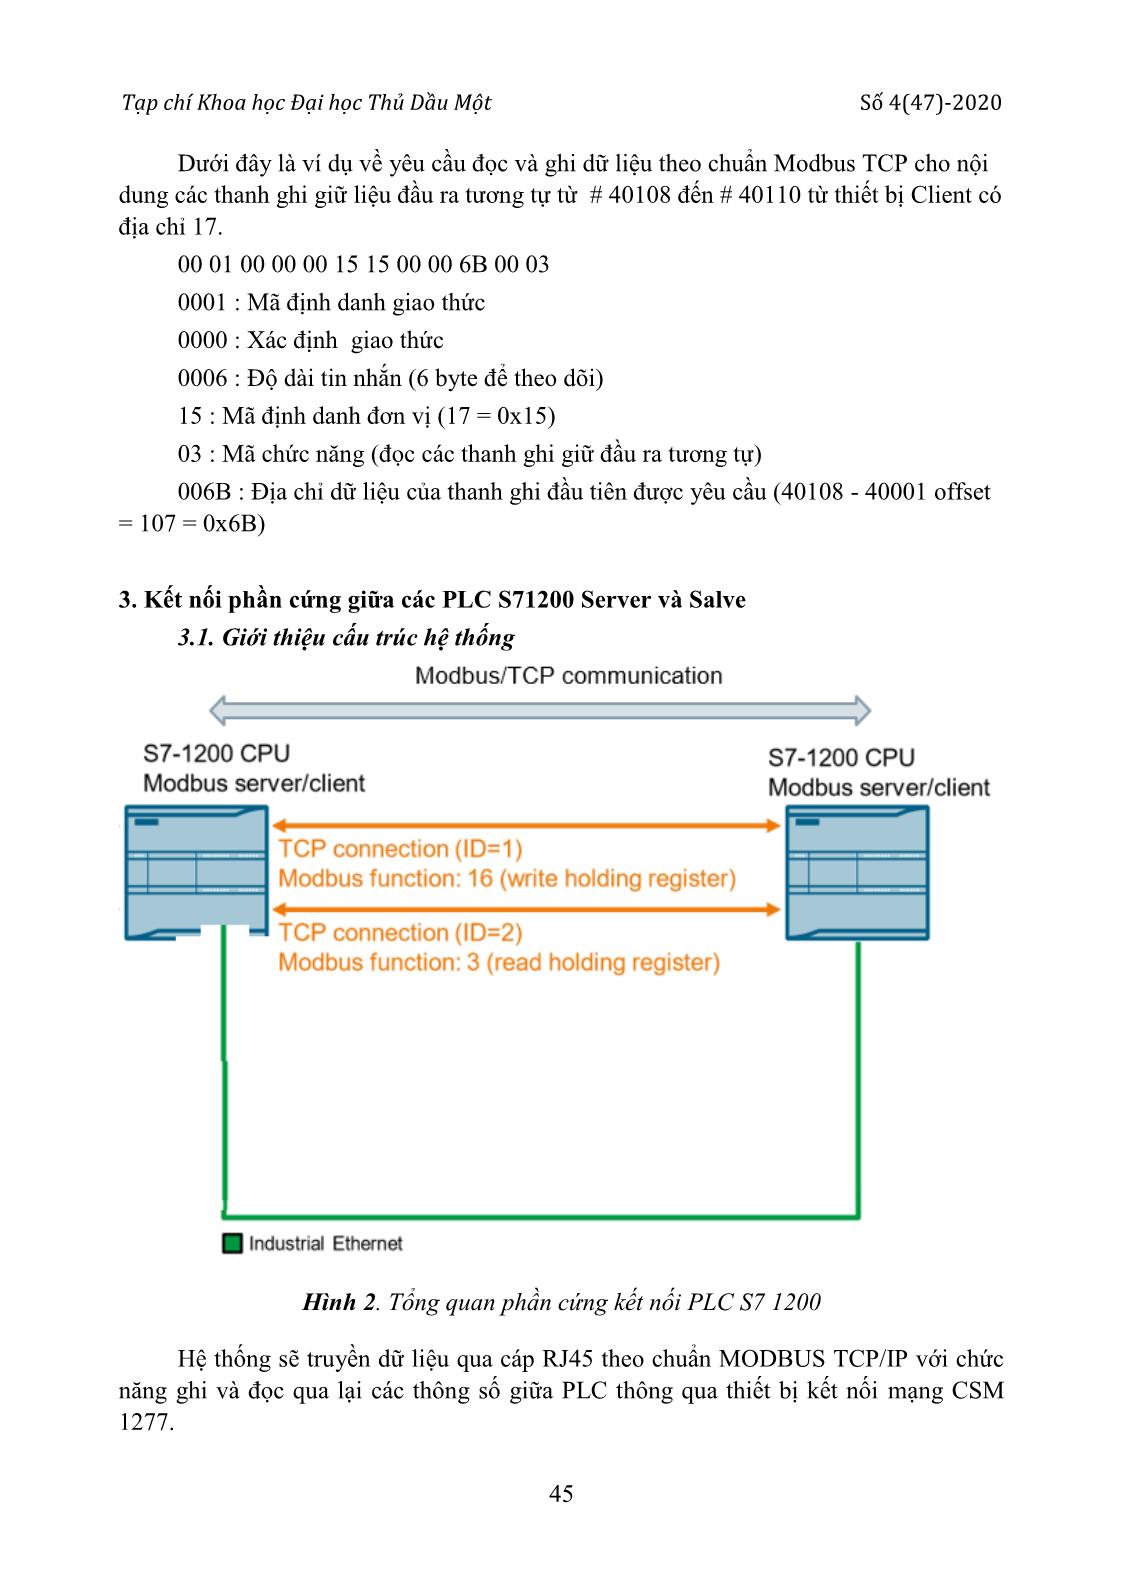 Kết nối mạng PLC bằng giao thức Modbus TCP/IP với S71200 Server và các S71200 Client trang 5